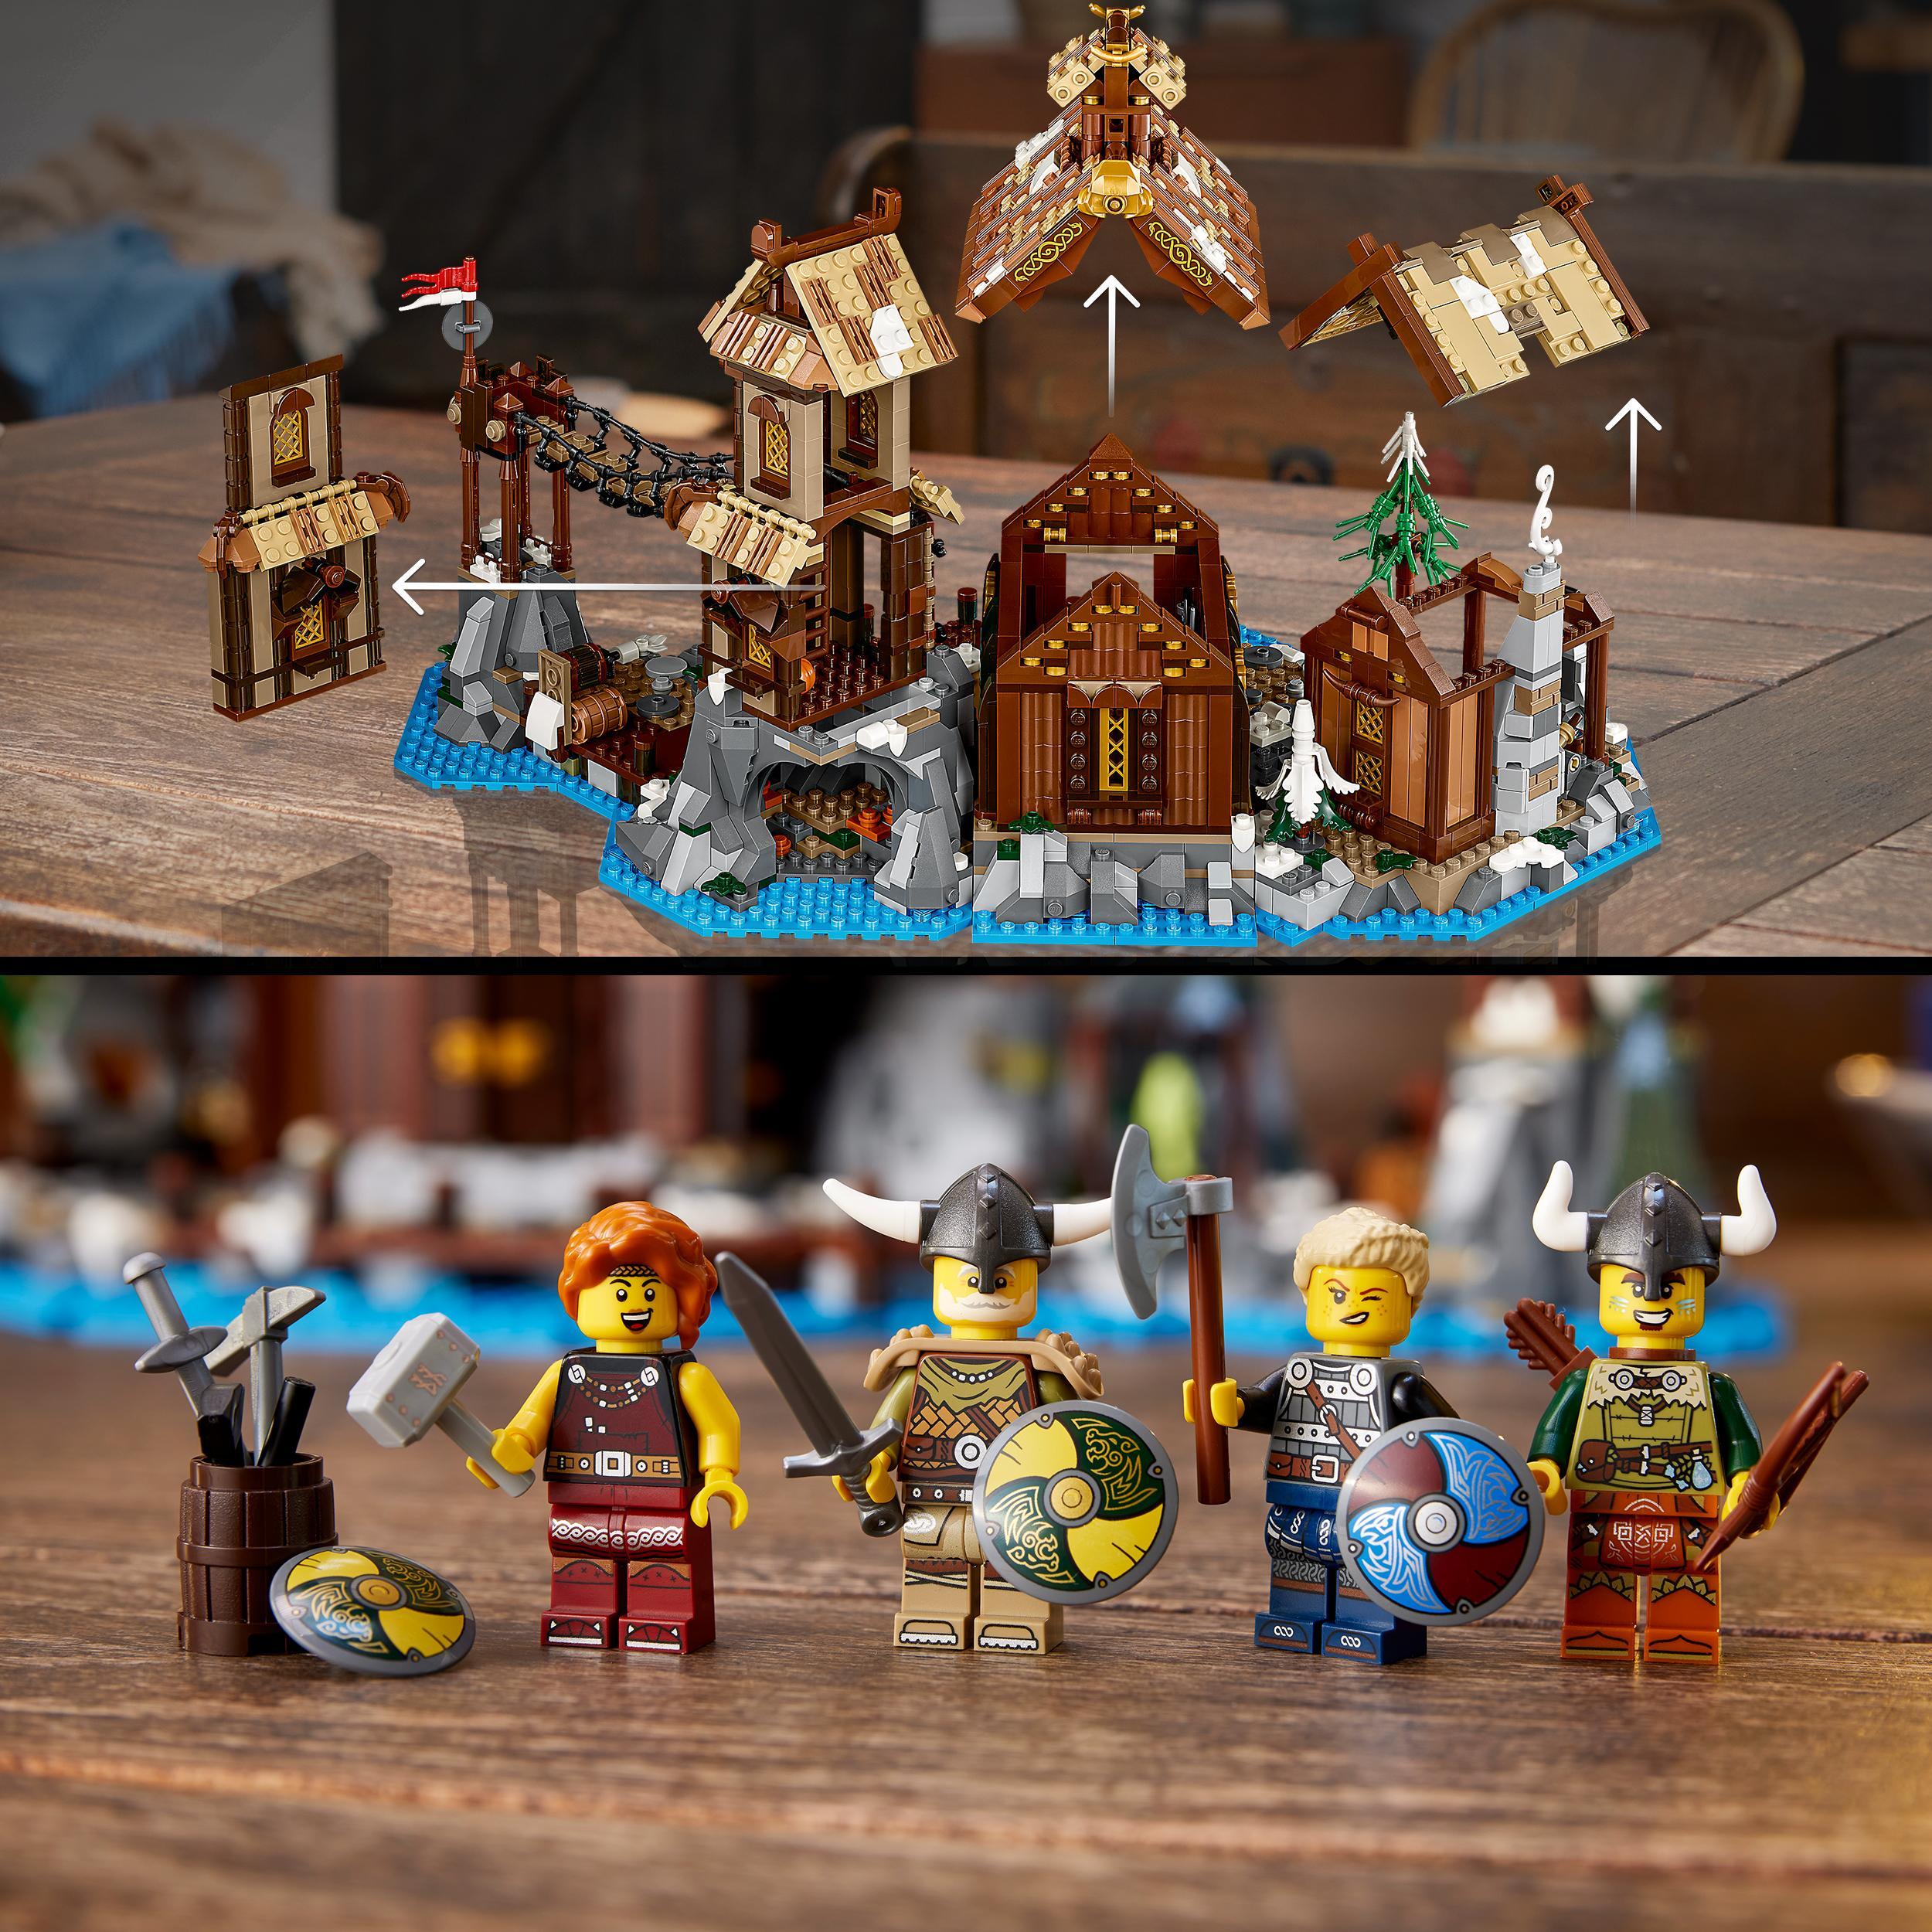 Lego ideas 21343 villaggio vichingo, kit modellismo per adulti da costruire, grande set idea regalo uomo, donna, lui e lei - LEGO IDEAS